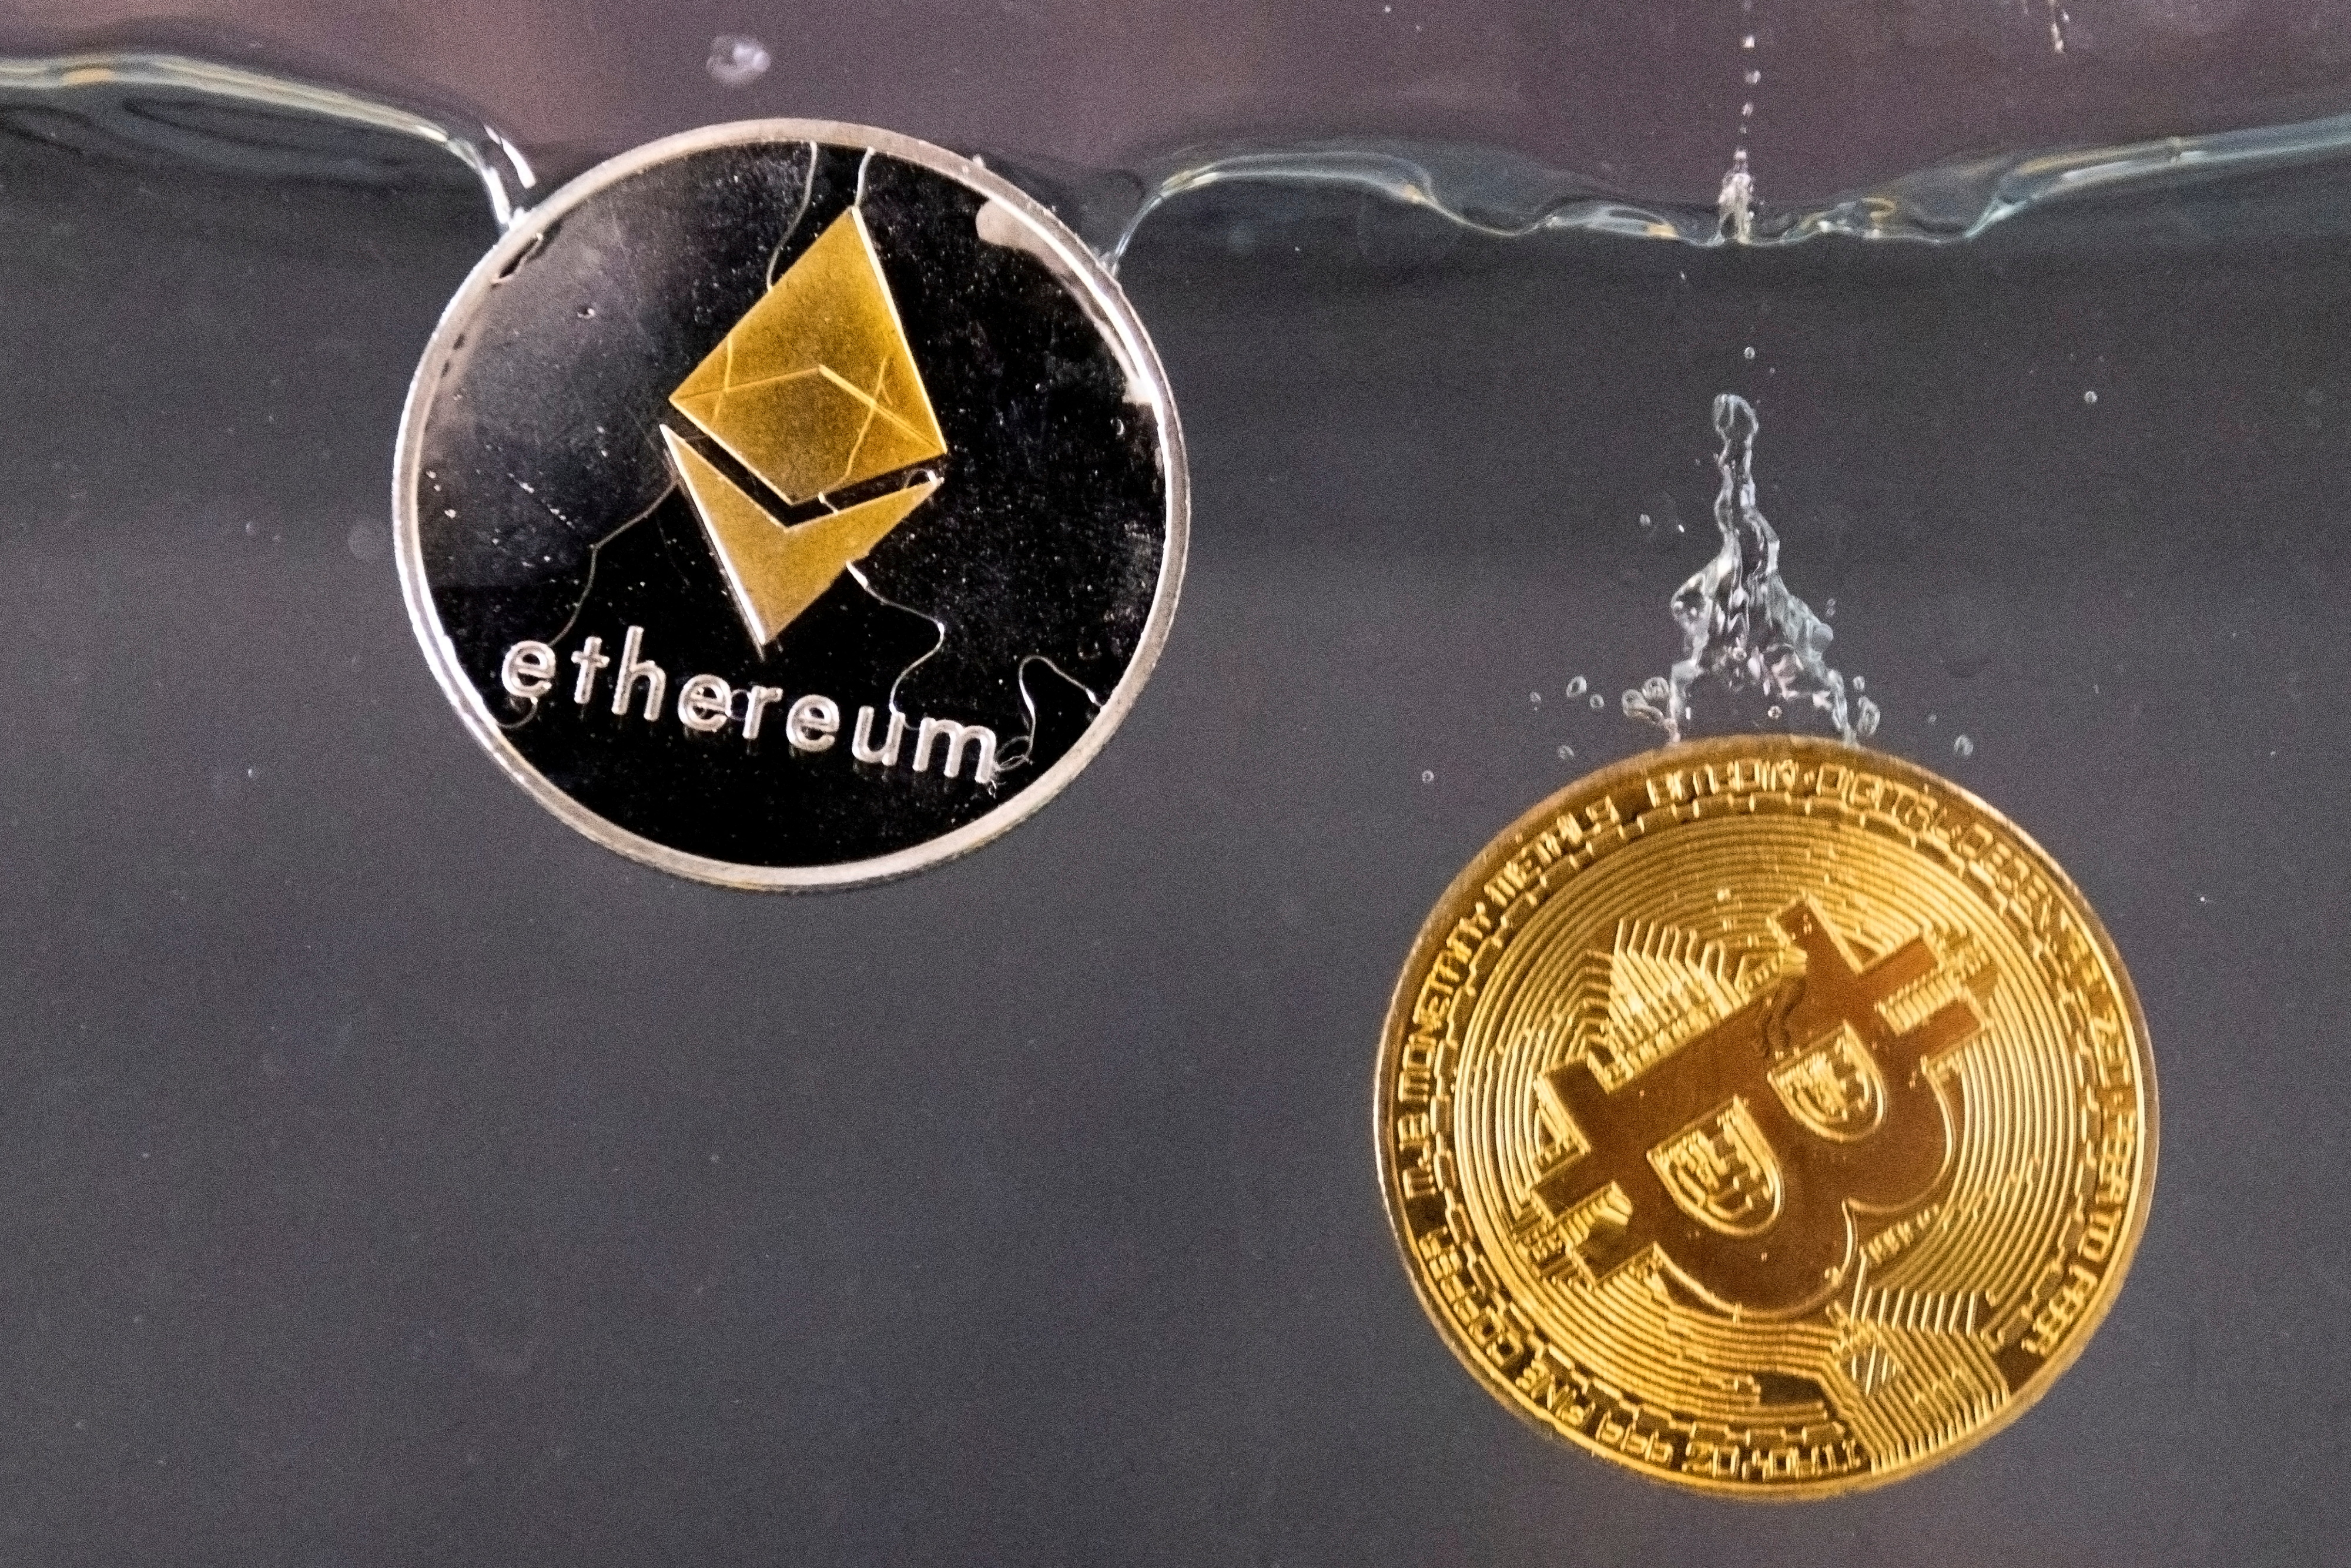 Ethereum y Bitcoin, las criptomonedas más importantes del mercado. (Foto: REUTERS/Dado Ruvic/Illustration/File Photo)